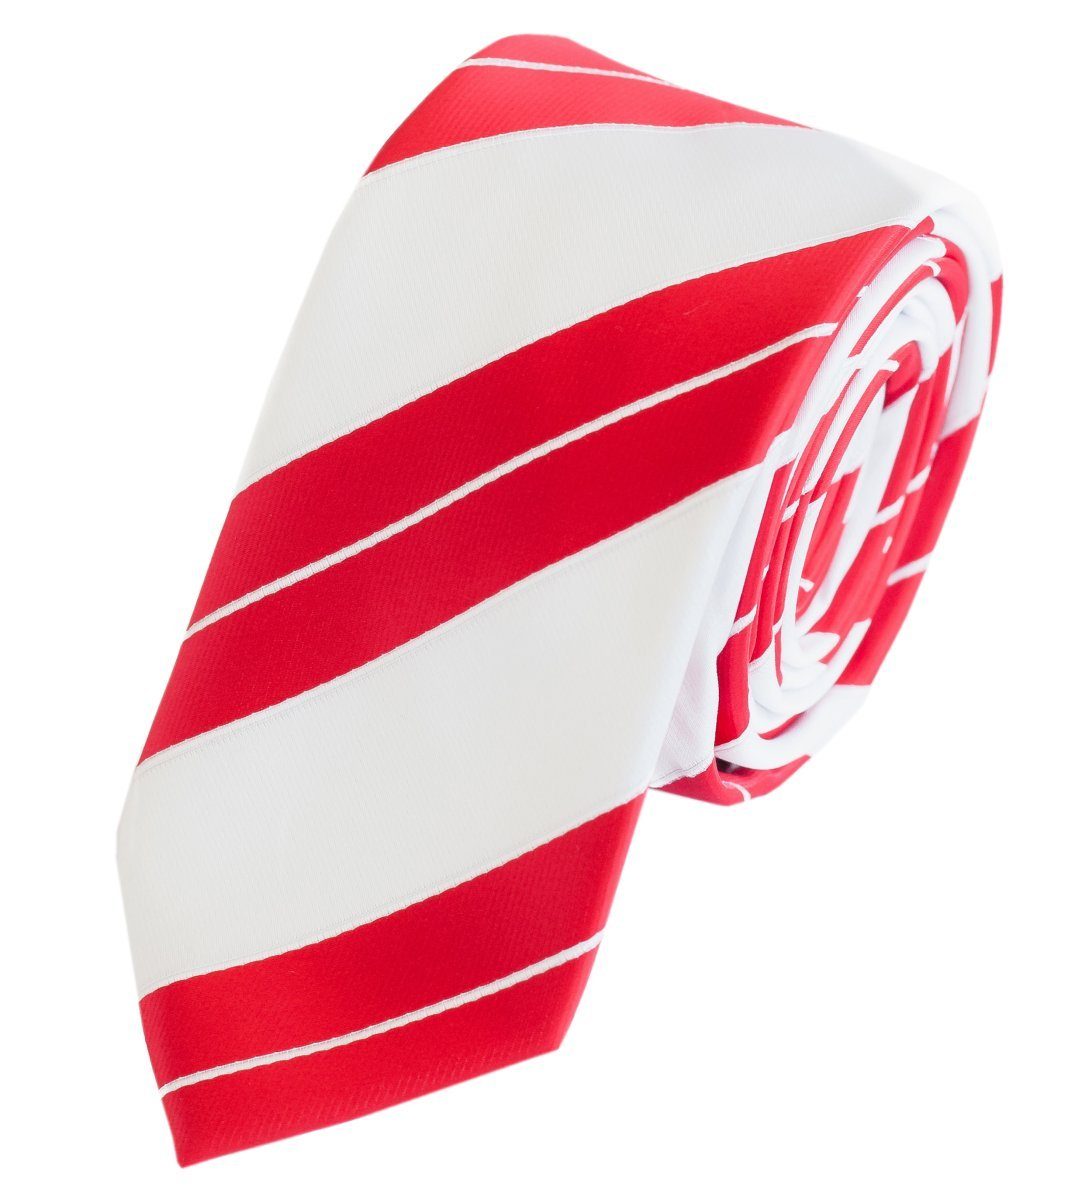 Fabio Farini Schlips Rot Schmal mit Krawatten Farbton in Herren Gestreift) Krawatte (6cm), Weiß/Rot (ohne Box, - 6cm